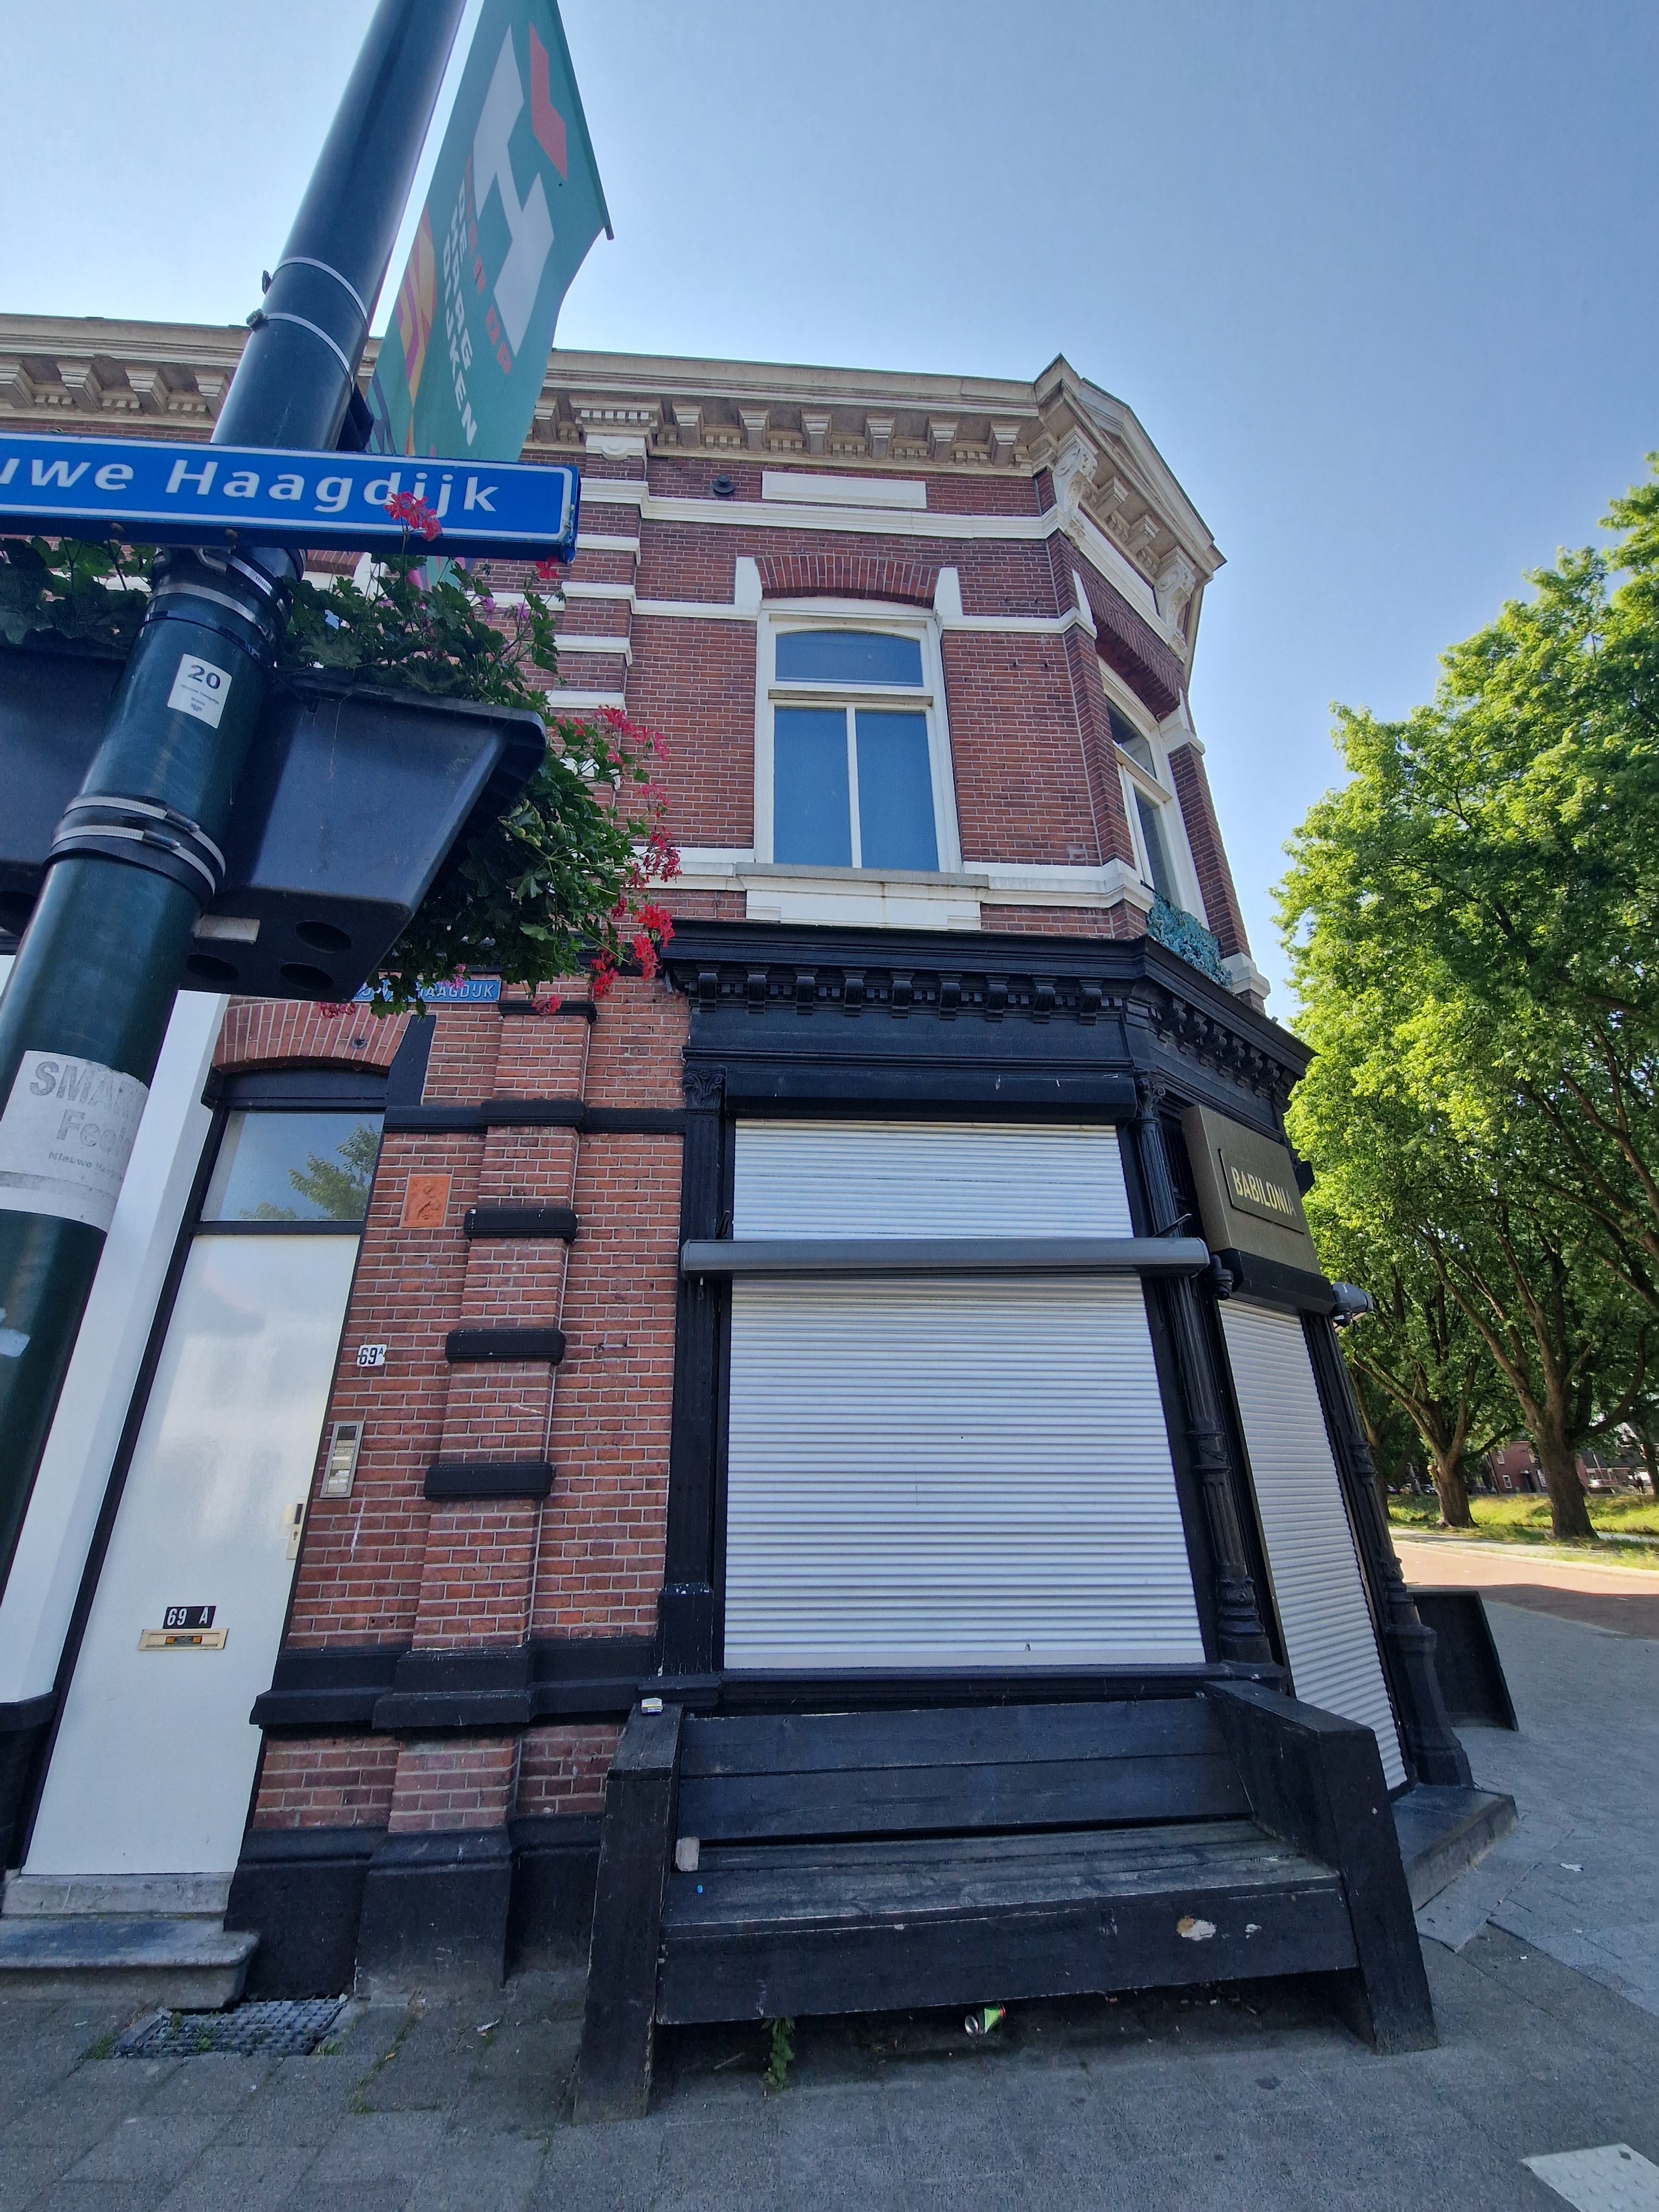 Woning in Breda - Nieuwe Haagdijk